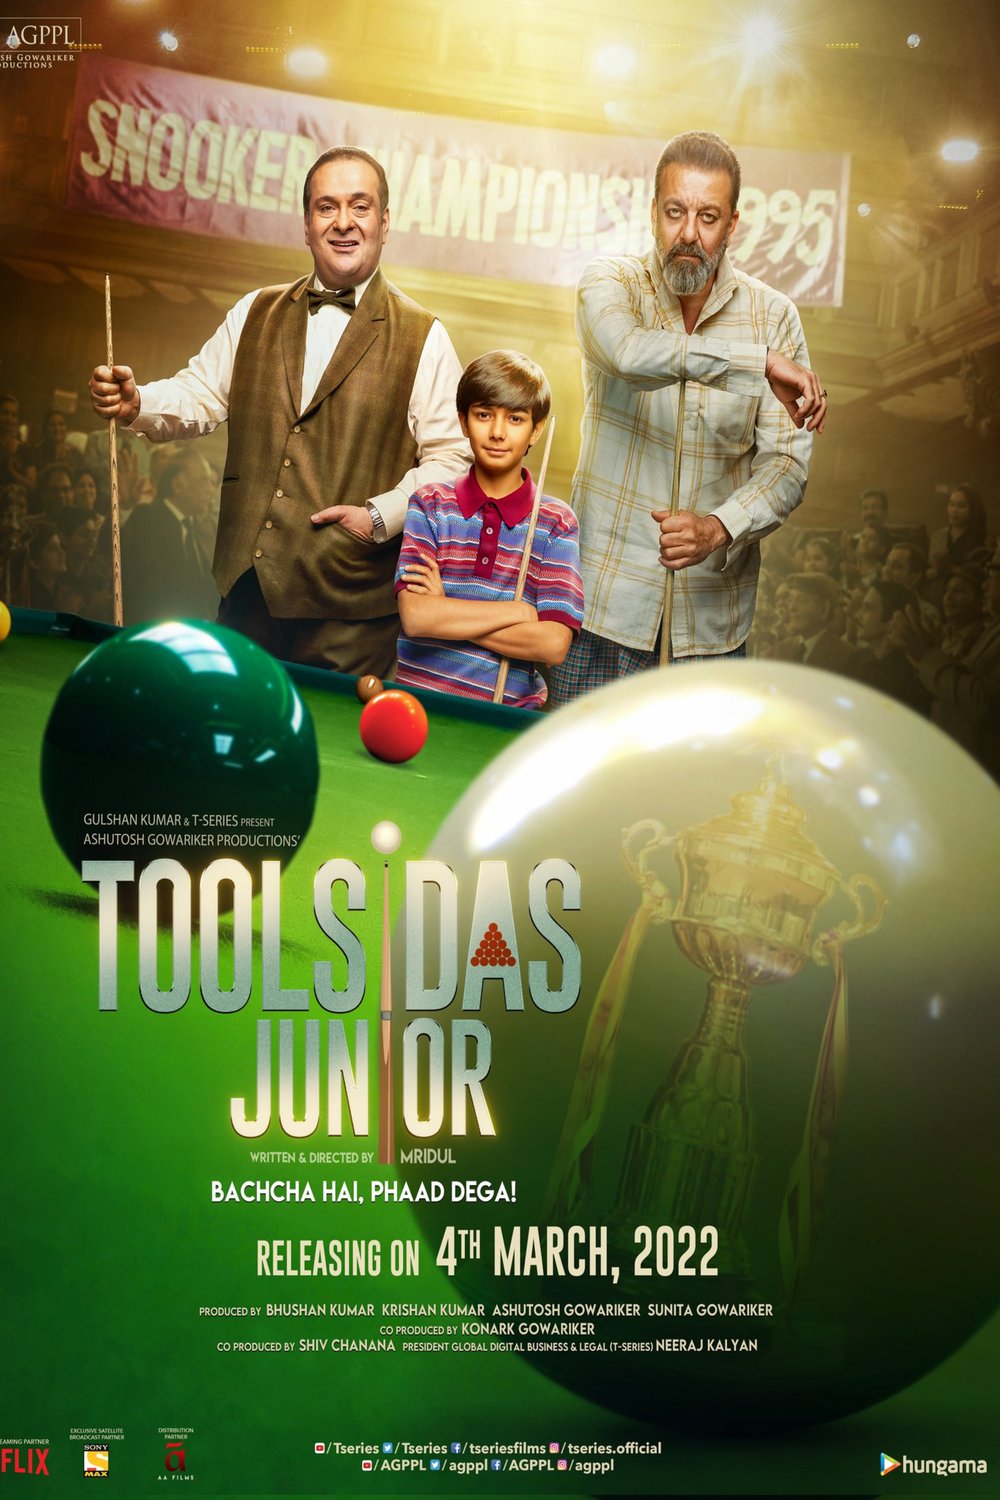 L'affiche originale du film Toolsidas Junior en Hindi